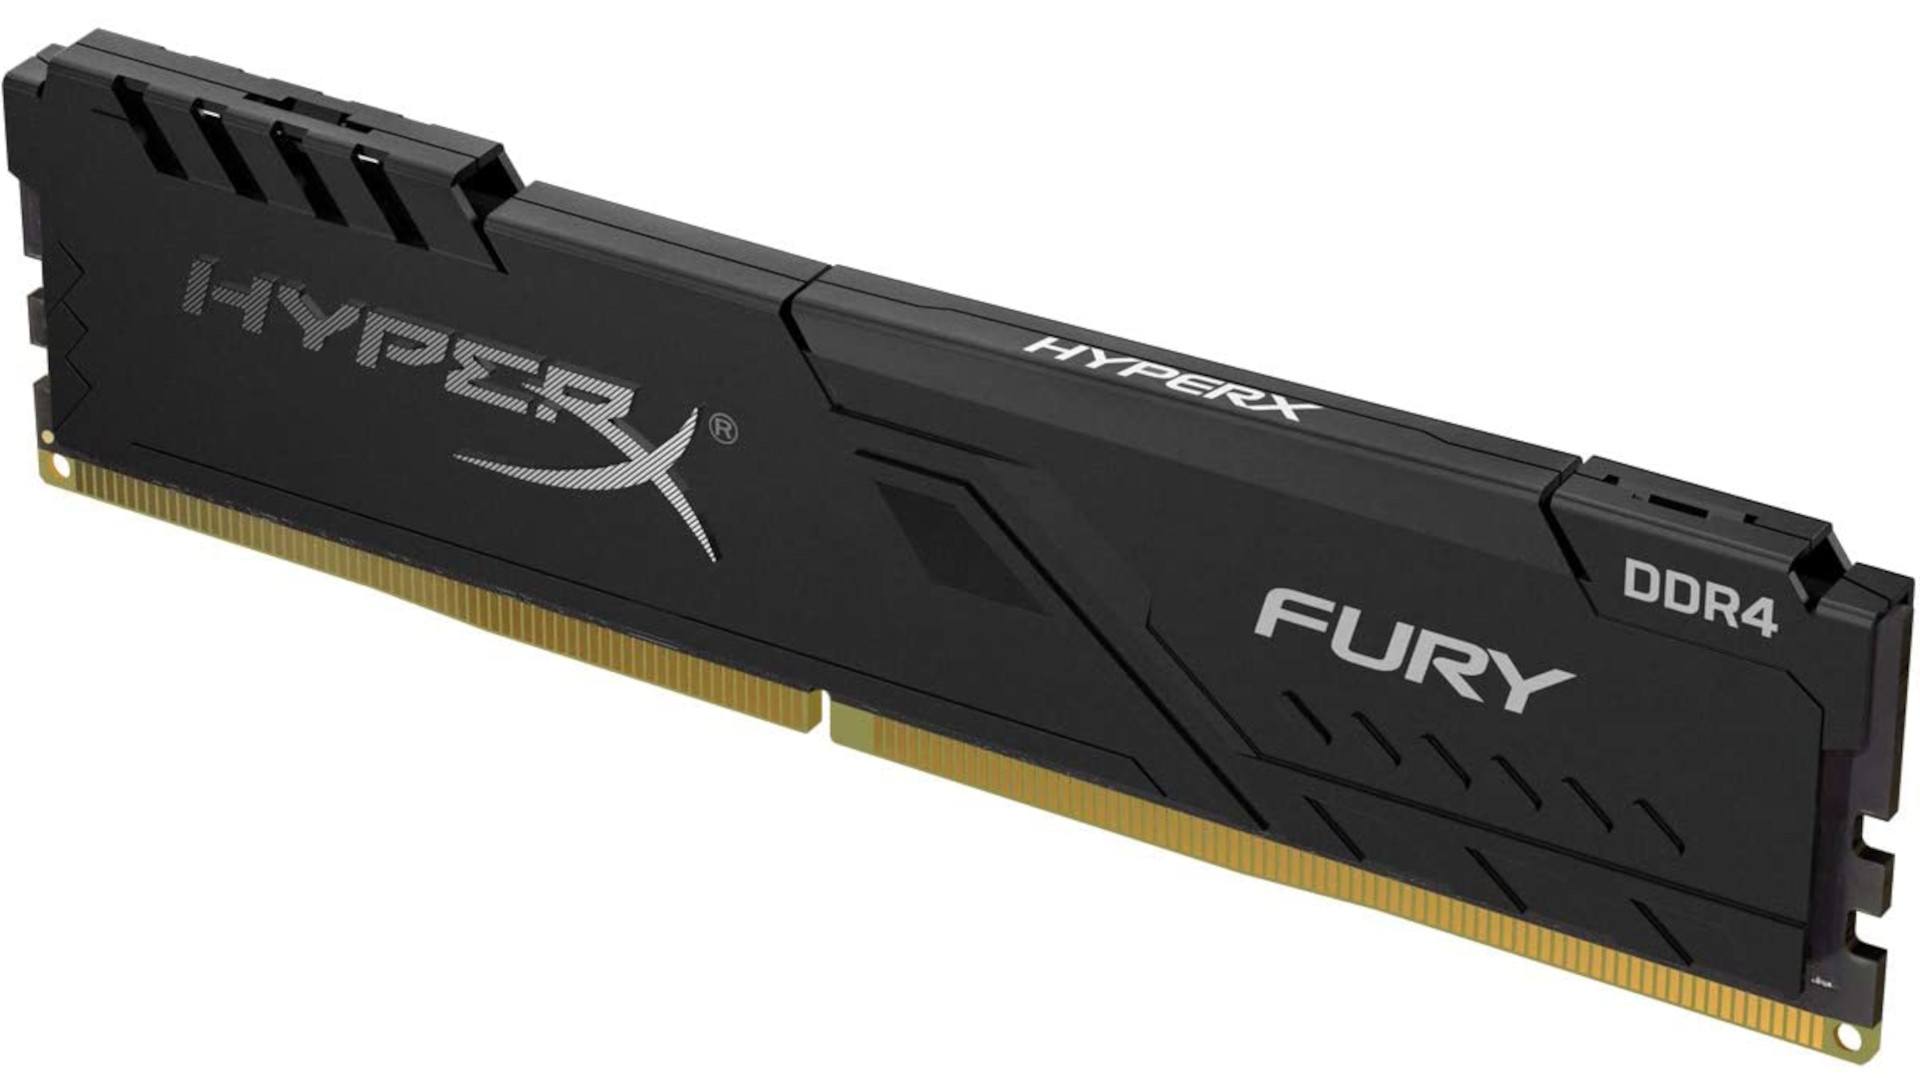 HyperX Fury DDR4 2133 C14 2x8GB 5